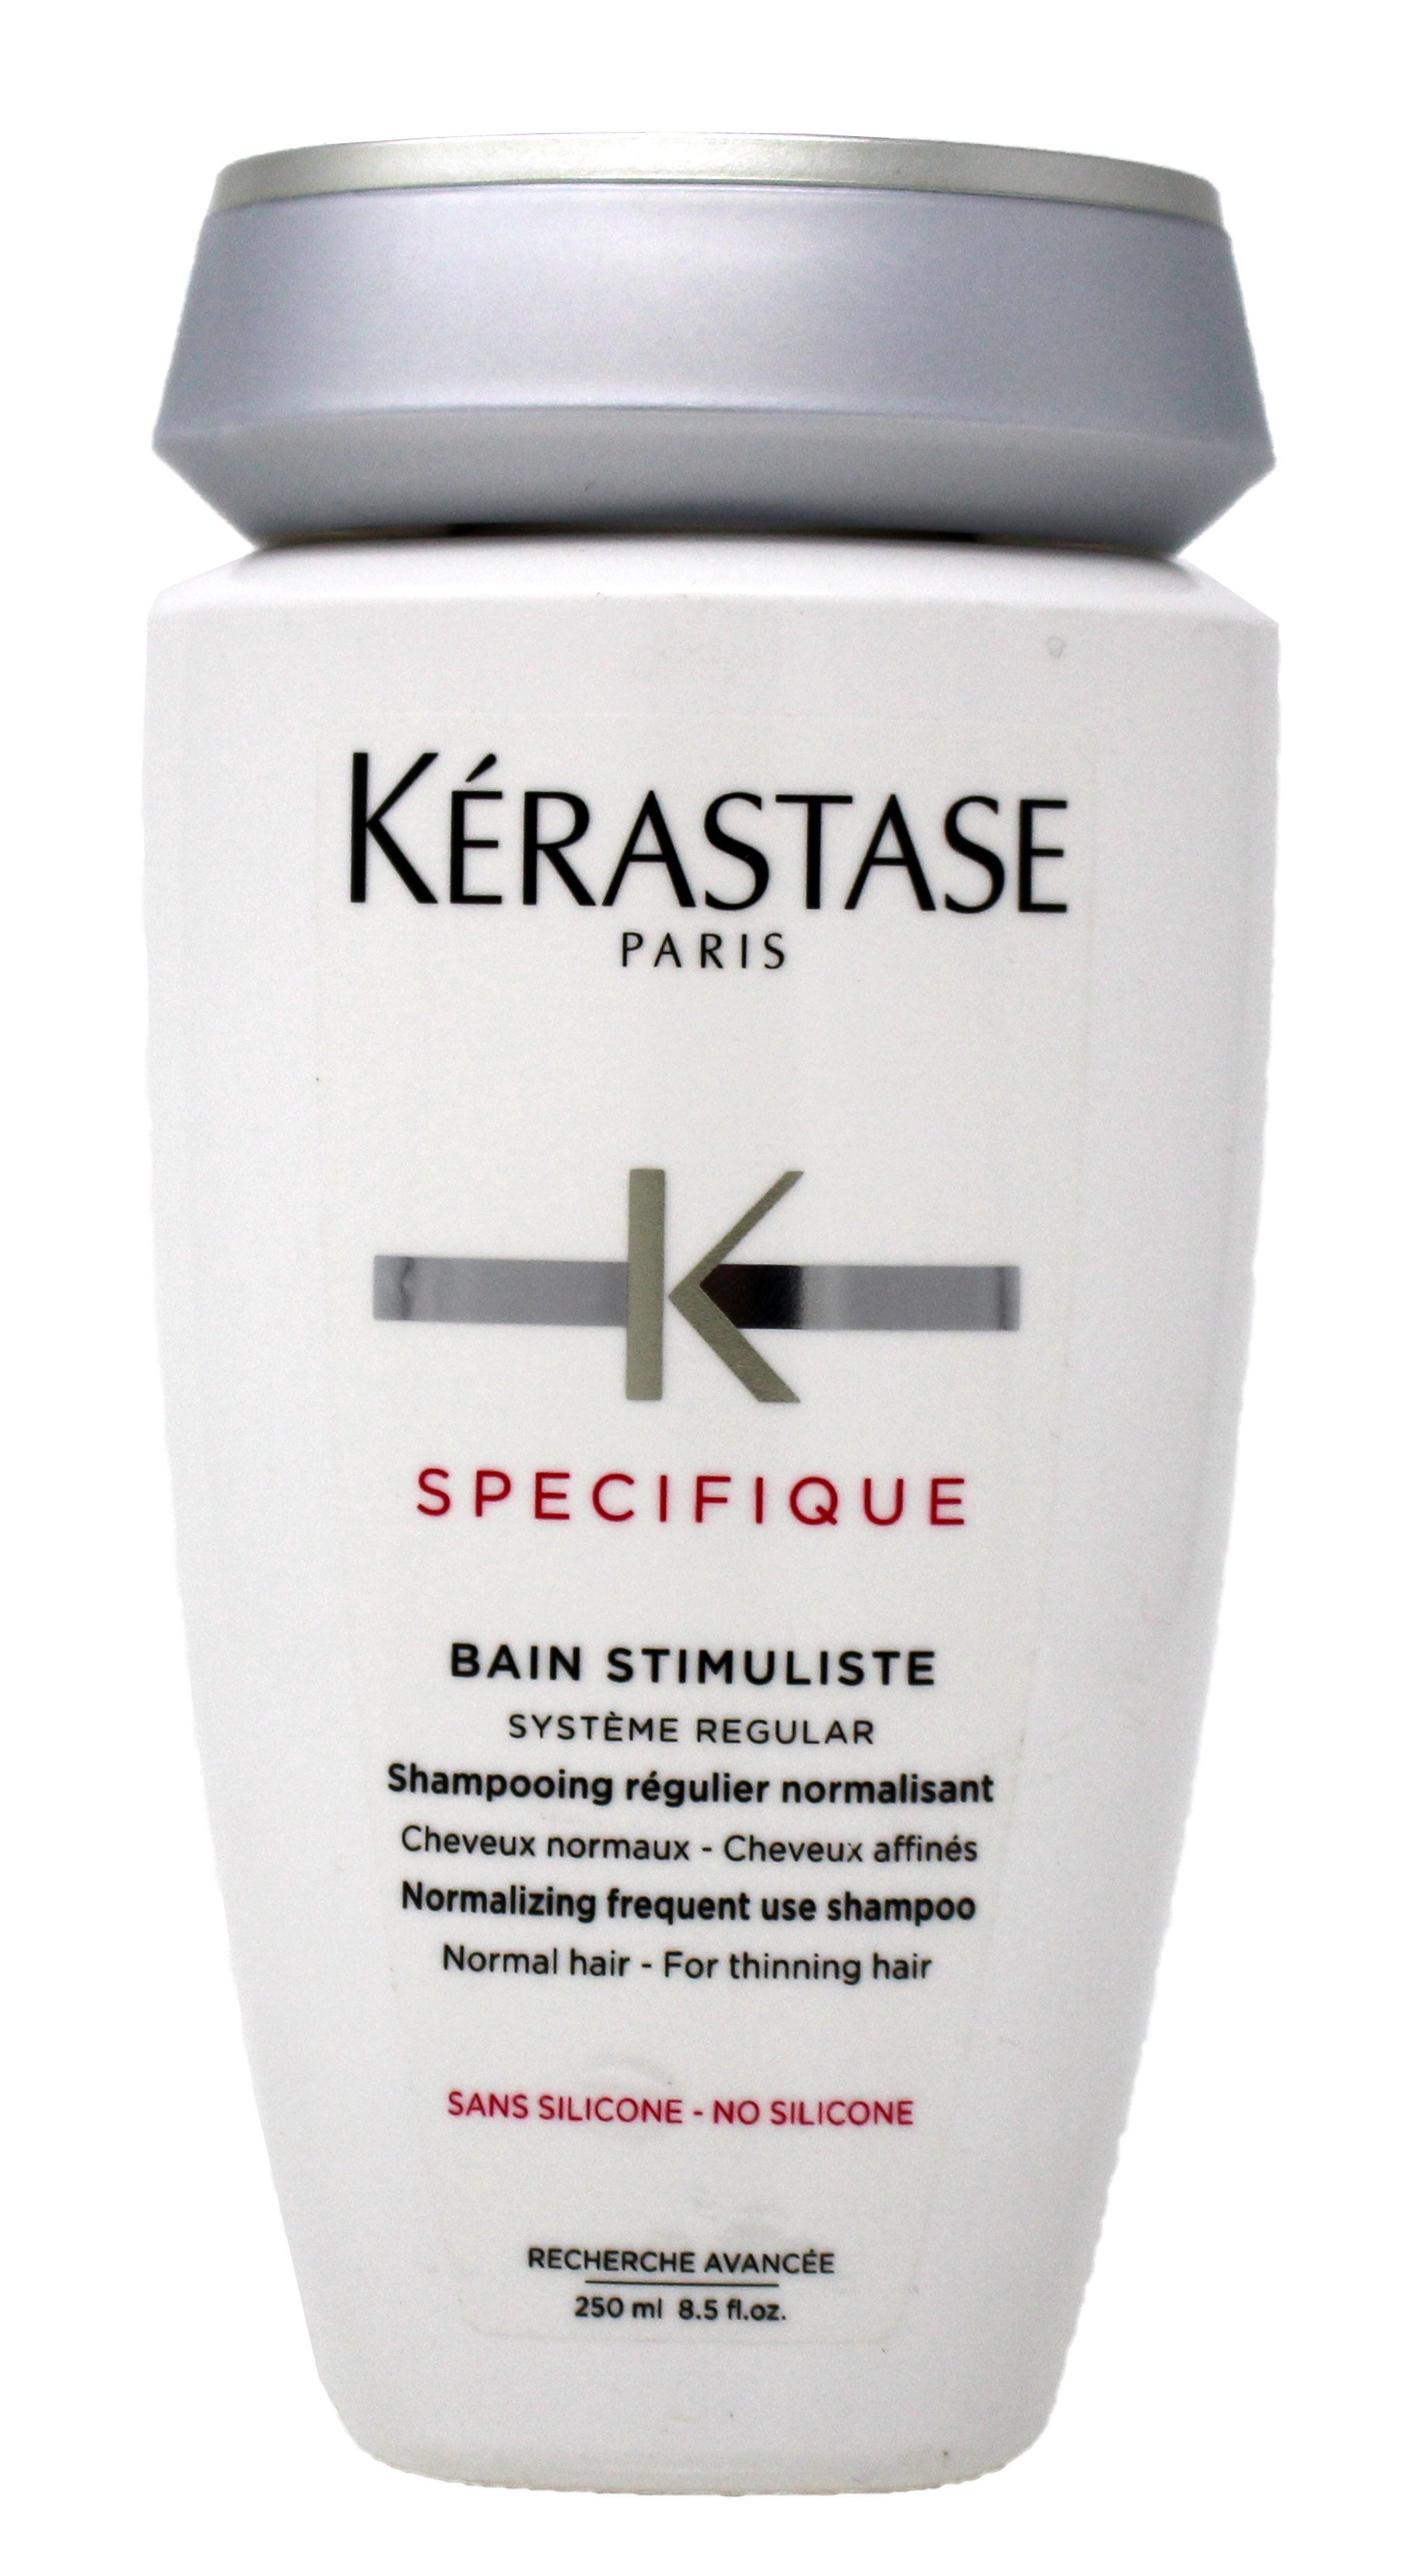 Kerastase Specifique Bain Stimuliste Shampoo, 8.5 Oz Walmart.com